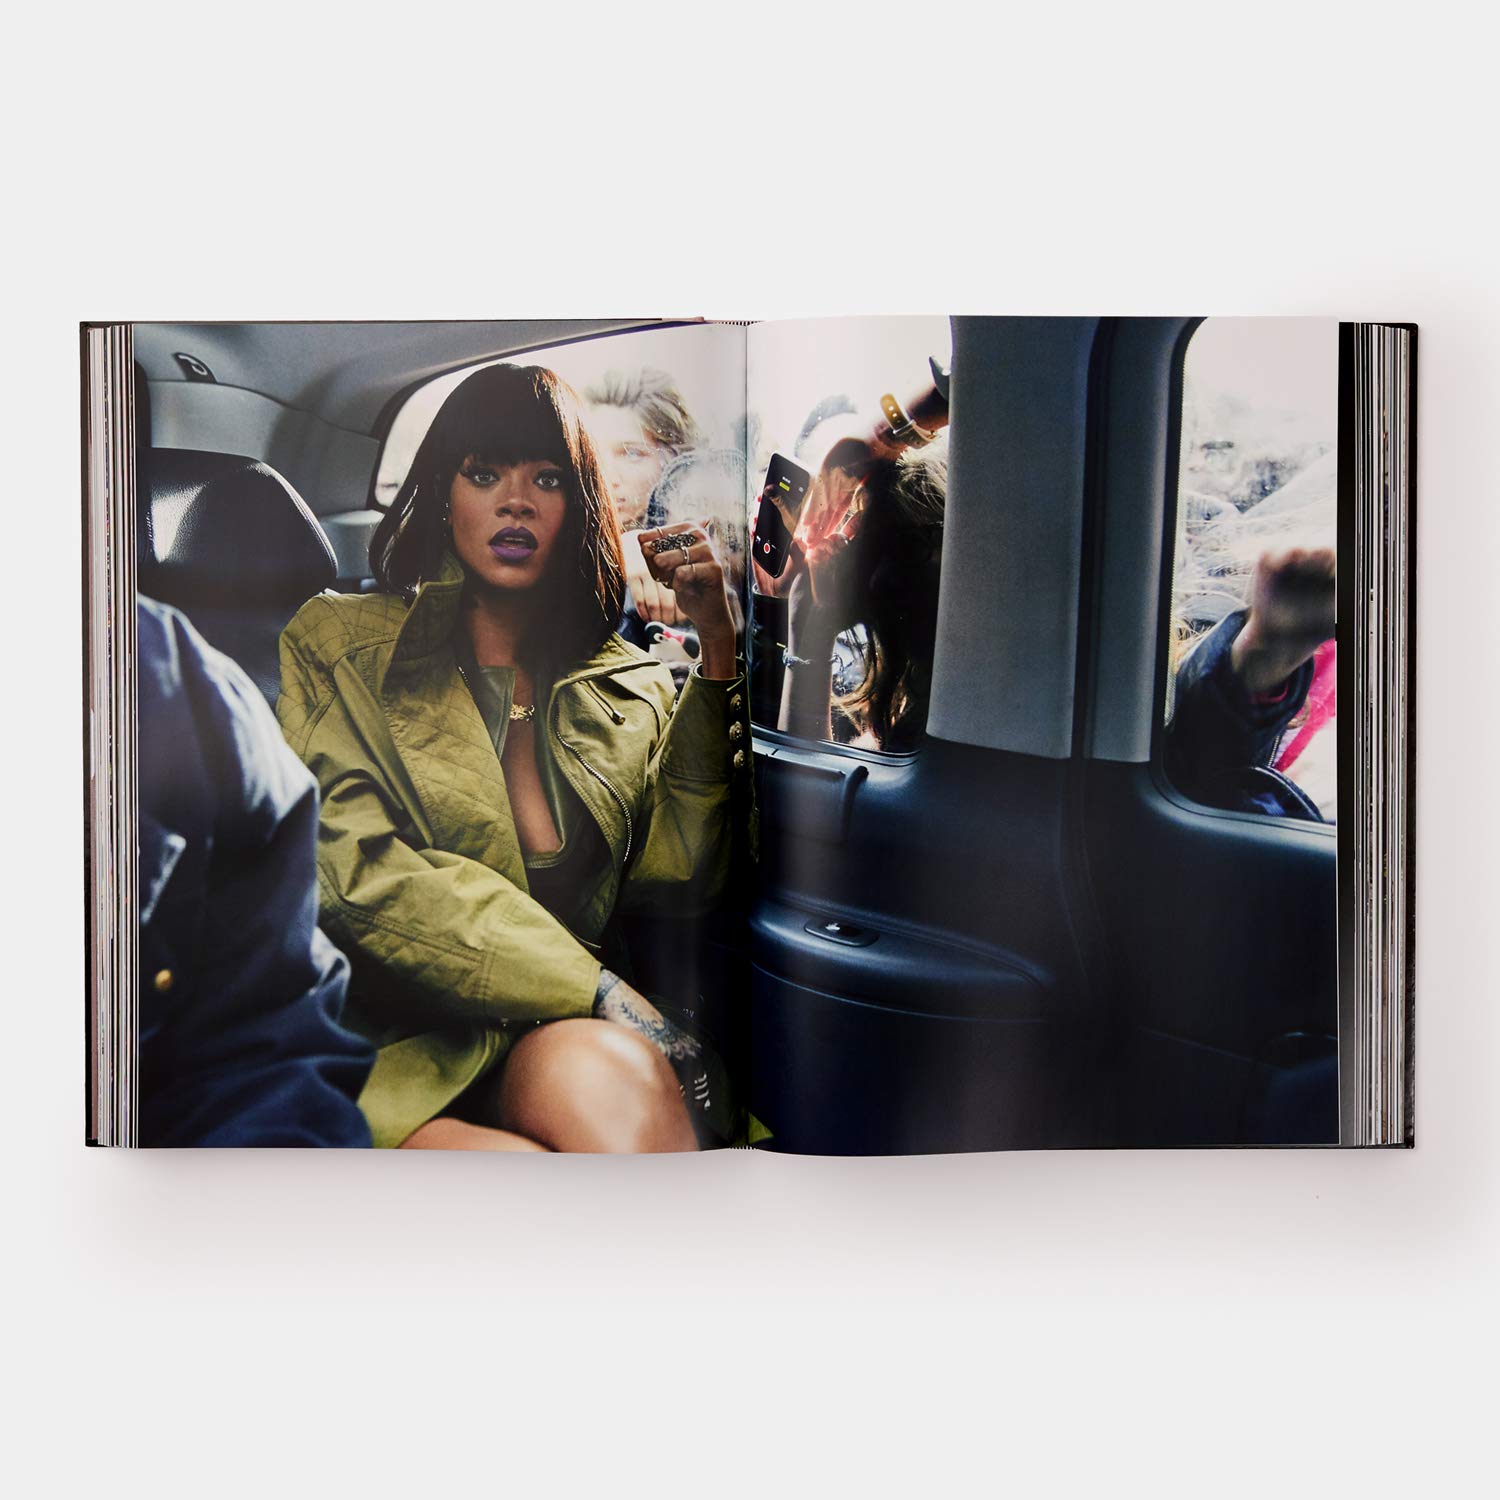 ספר ריהאנה: מהדורה מוגבלת (Fenty x Phaidon) הכולל מעמד יד מקועקע - כריכה קשה